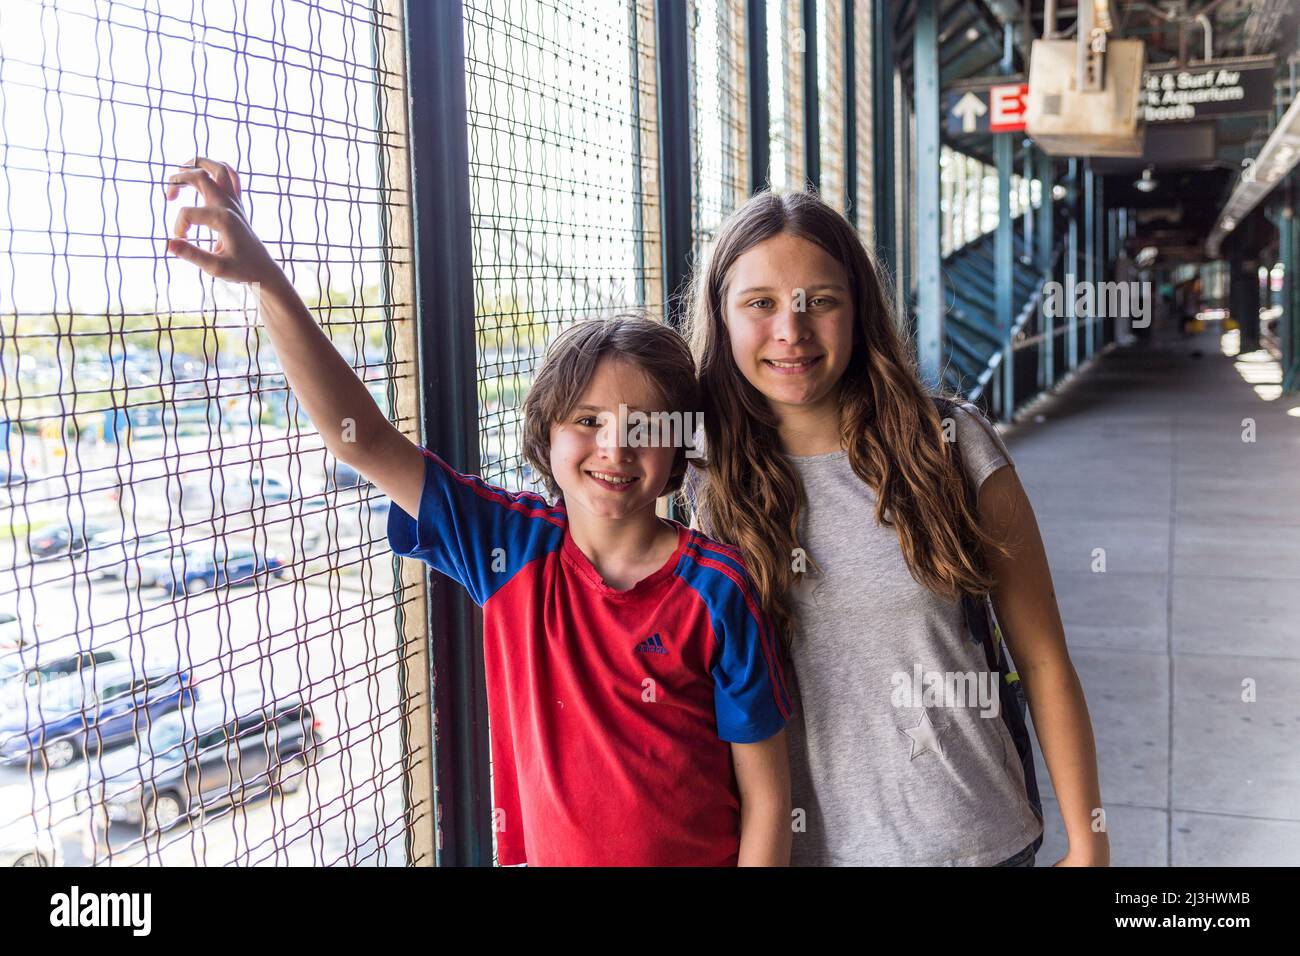 CONEY ISLAND, New York City, NY, USA, 14 Jahre altes kaukasisches Teenager-Mädchen und 12 Jahre altes kaukasisches Teenager-Mädchen – beide mit braunen Haaren und sommerlichem Styling an der U-Bahn-Station Stockfoto